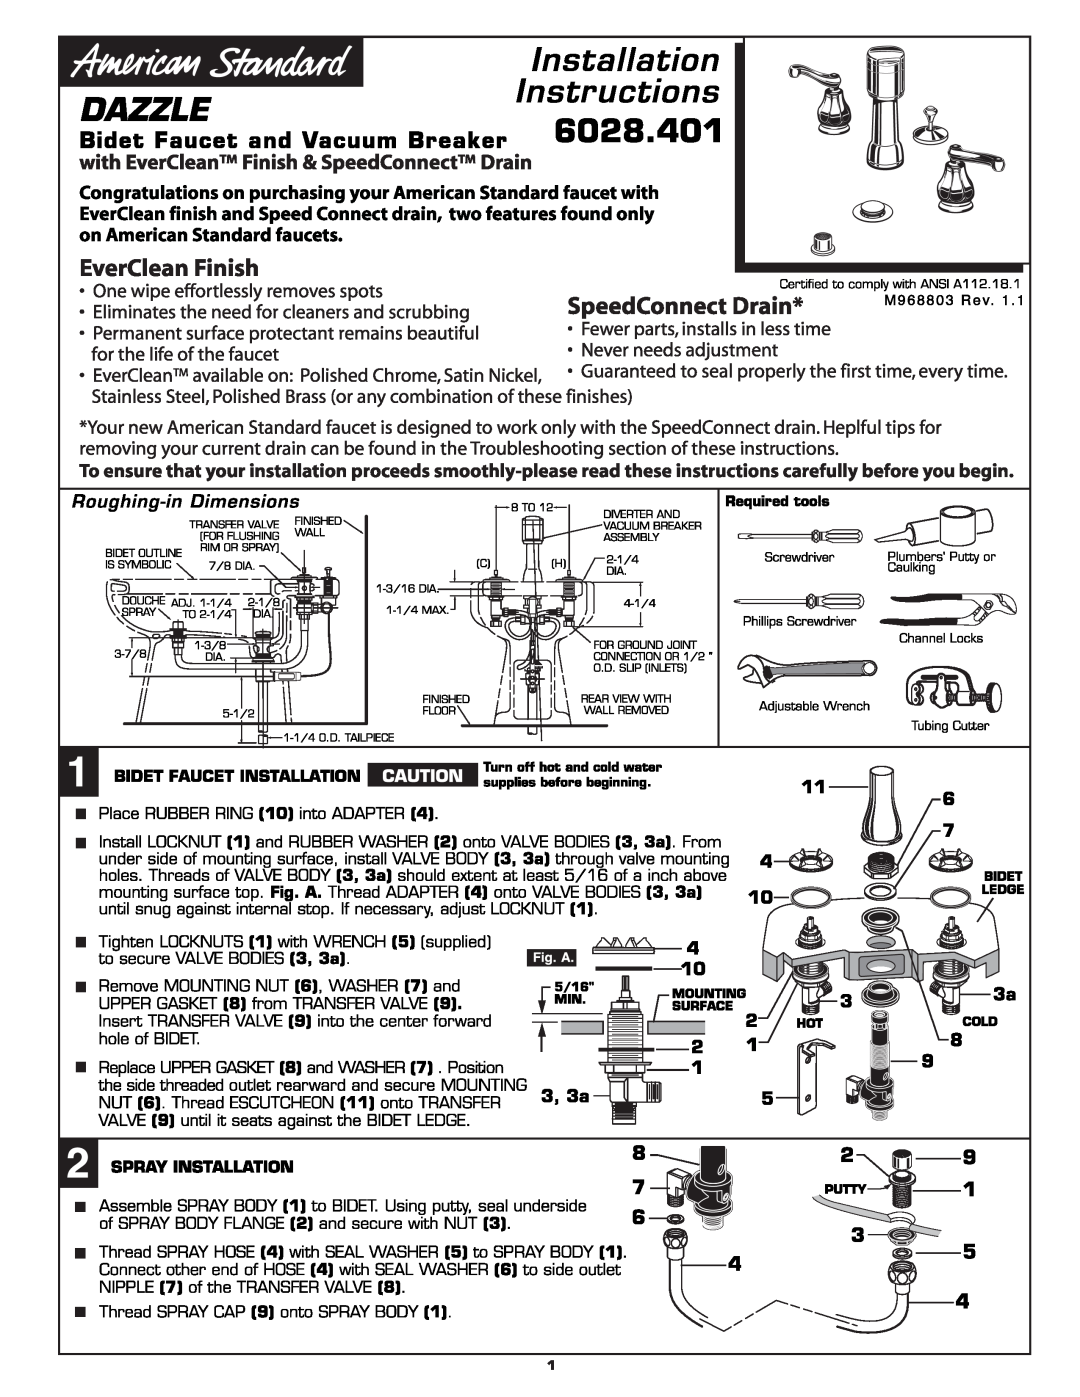 American Standard 6028.401 manual 